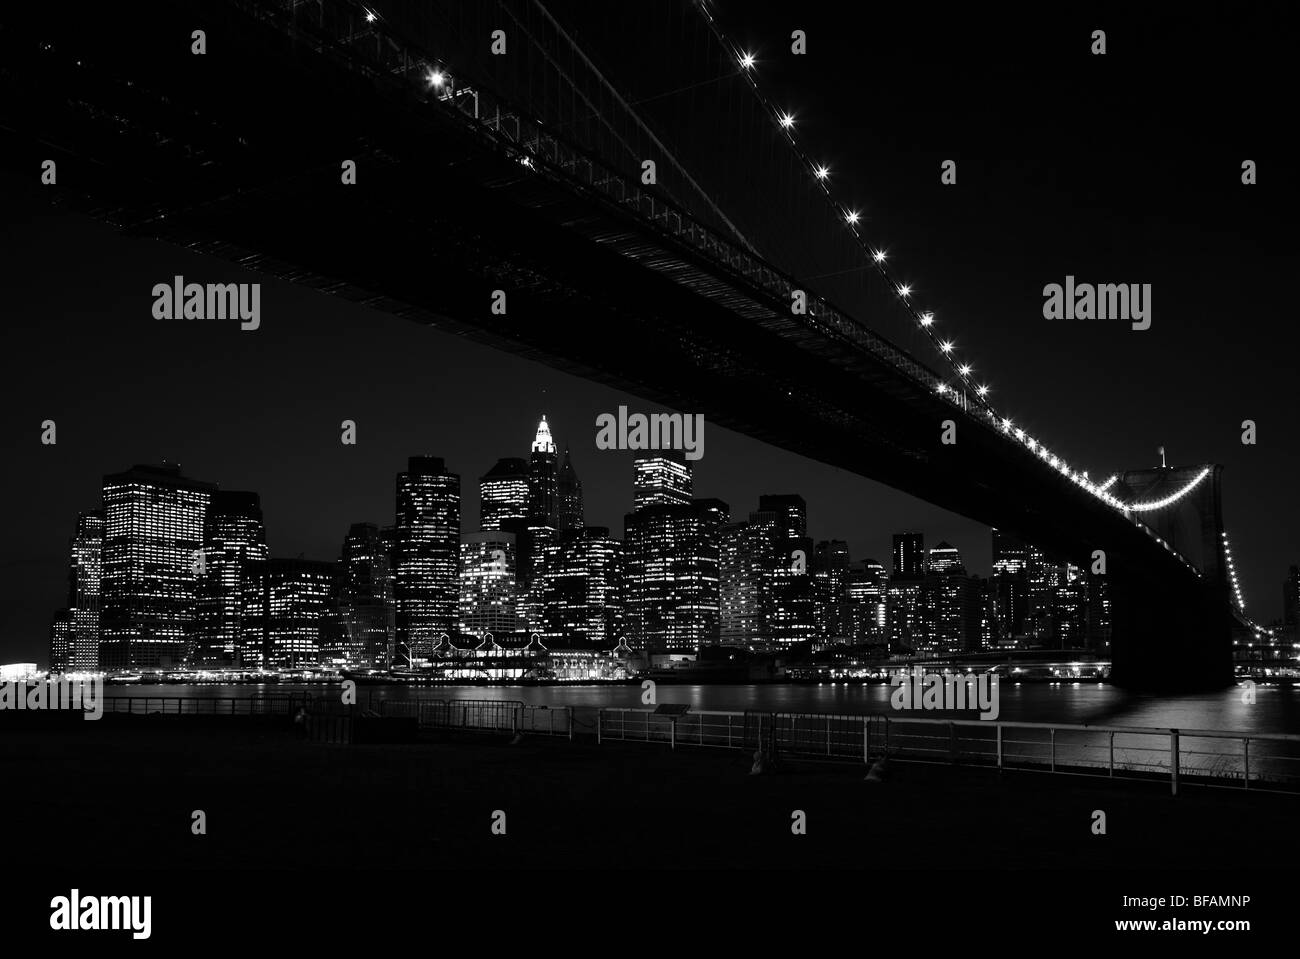 Der Blick unter der Brooklyn Bridge in Richtung Lower Manhattan Finanzviertel, New York, in der Nacht in schwarz und weiß. Stockfoto